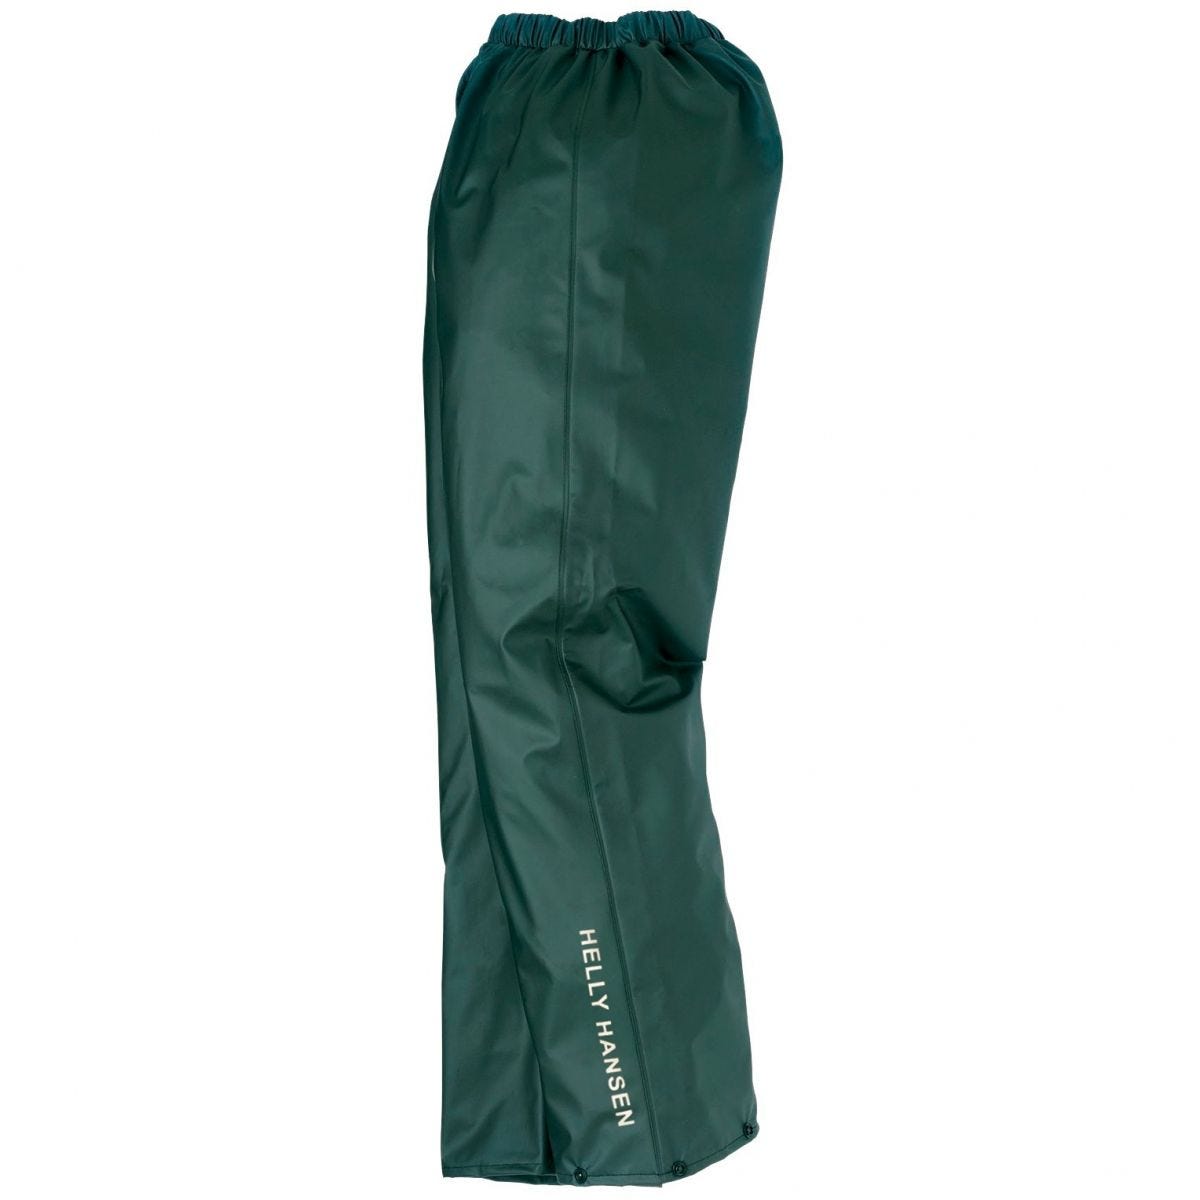 Pantalon de pluie imperméable Voss vert - Helly Hansen - Taille M 0